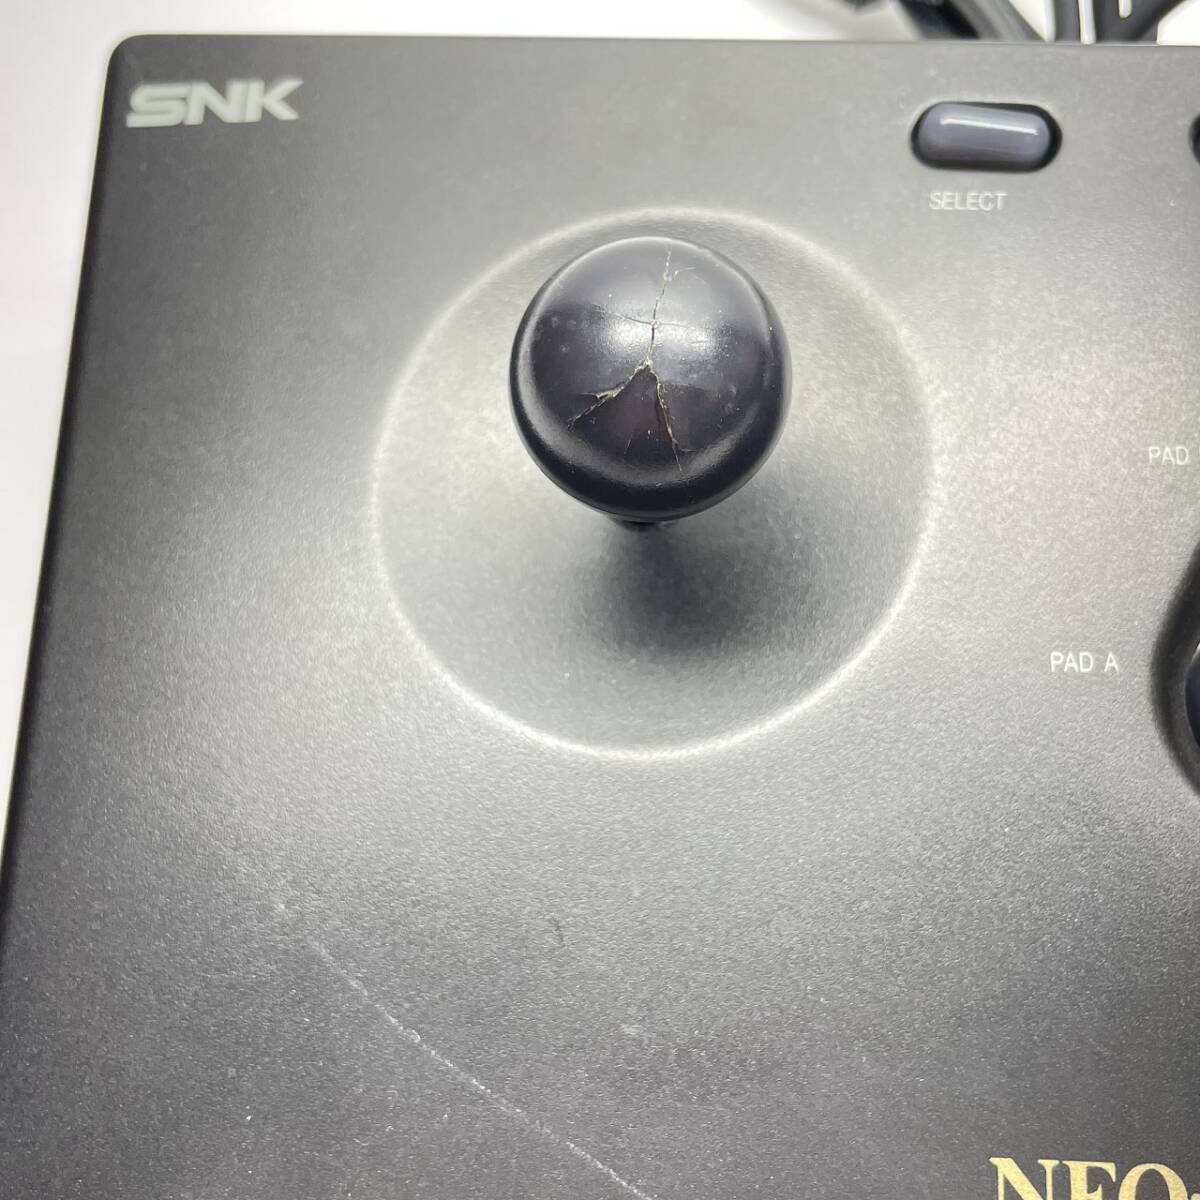 kk052 SNK NEO*GEO Neo geo контроллер только работоспособность не проверялась * Junk 